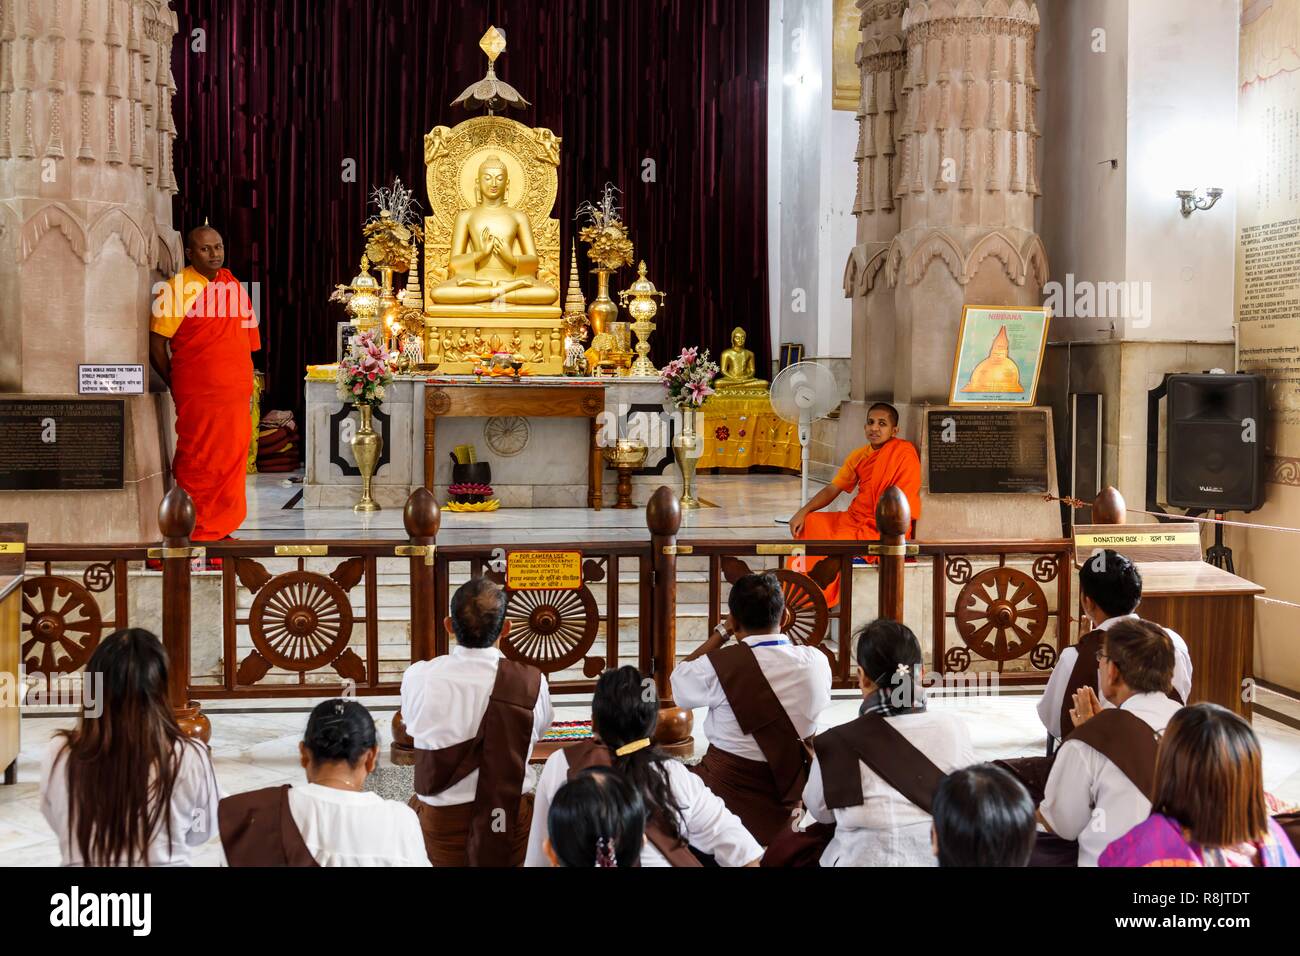 India, Uttar Pradesh, Sarnath, buddhist monks and Lord Buddha statue in Mulagandha Kuty Vihara temple Stock Photo